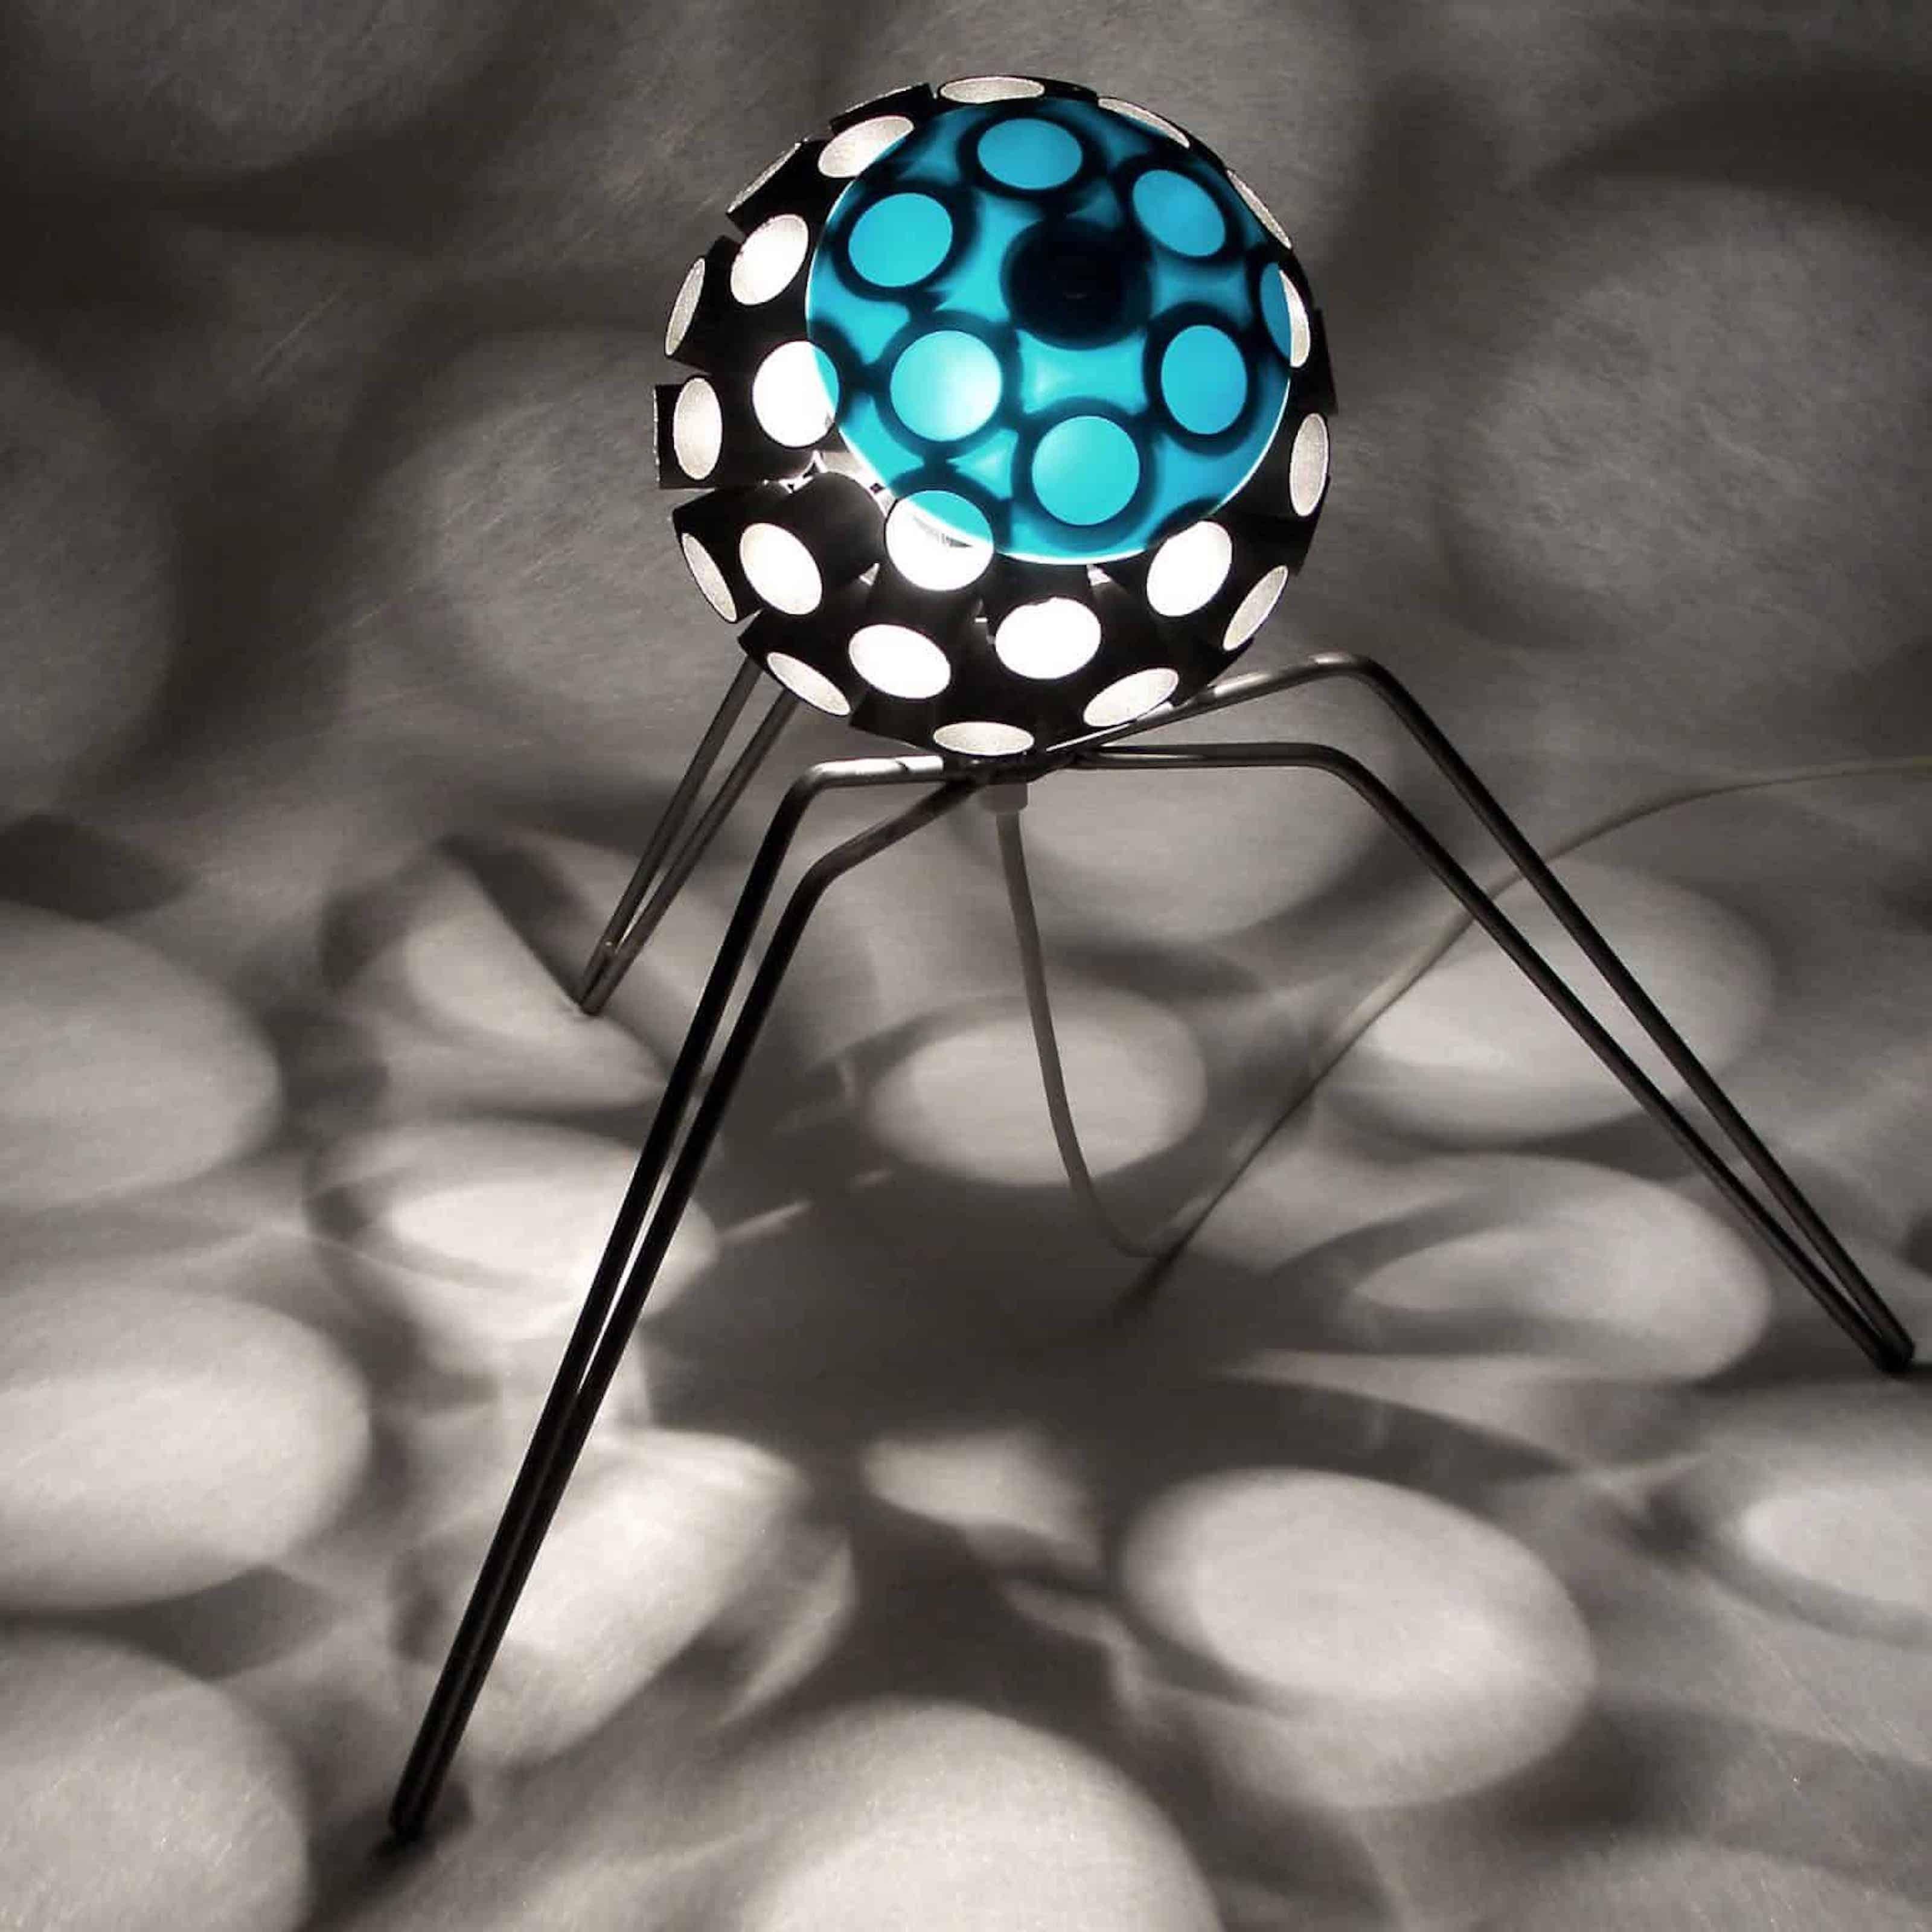  Lampe d'intérieur - « Virus » avec projection d'ombre - contemporaine unique - petite - Mixed Media Art de Stefan Traloc